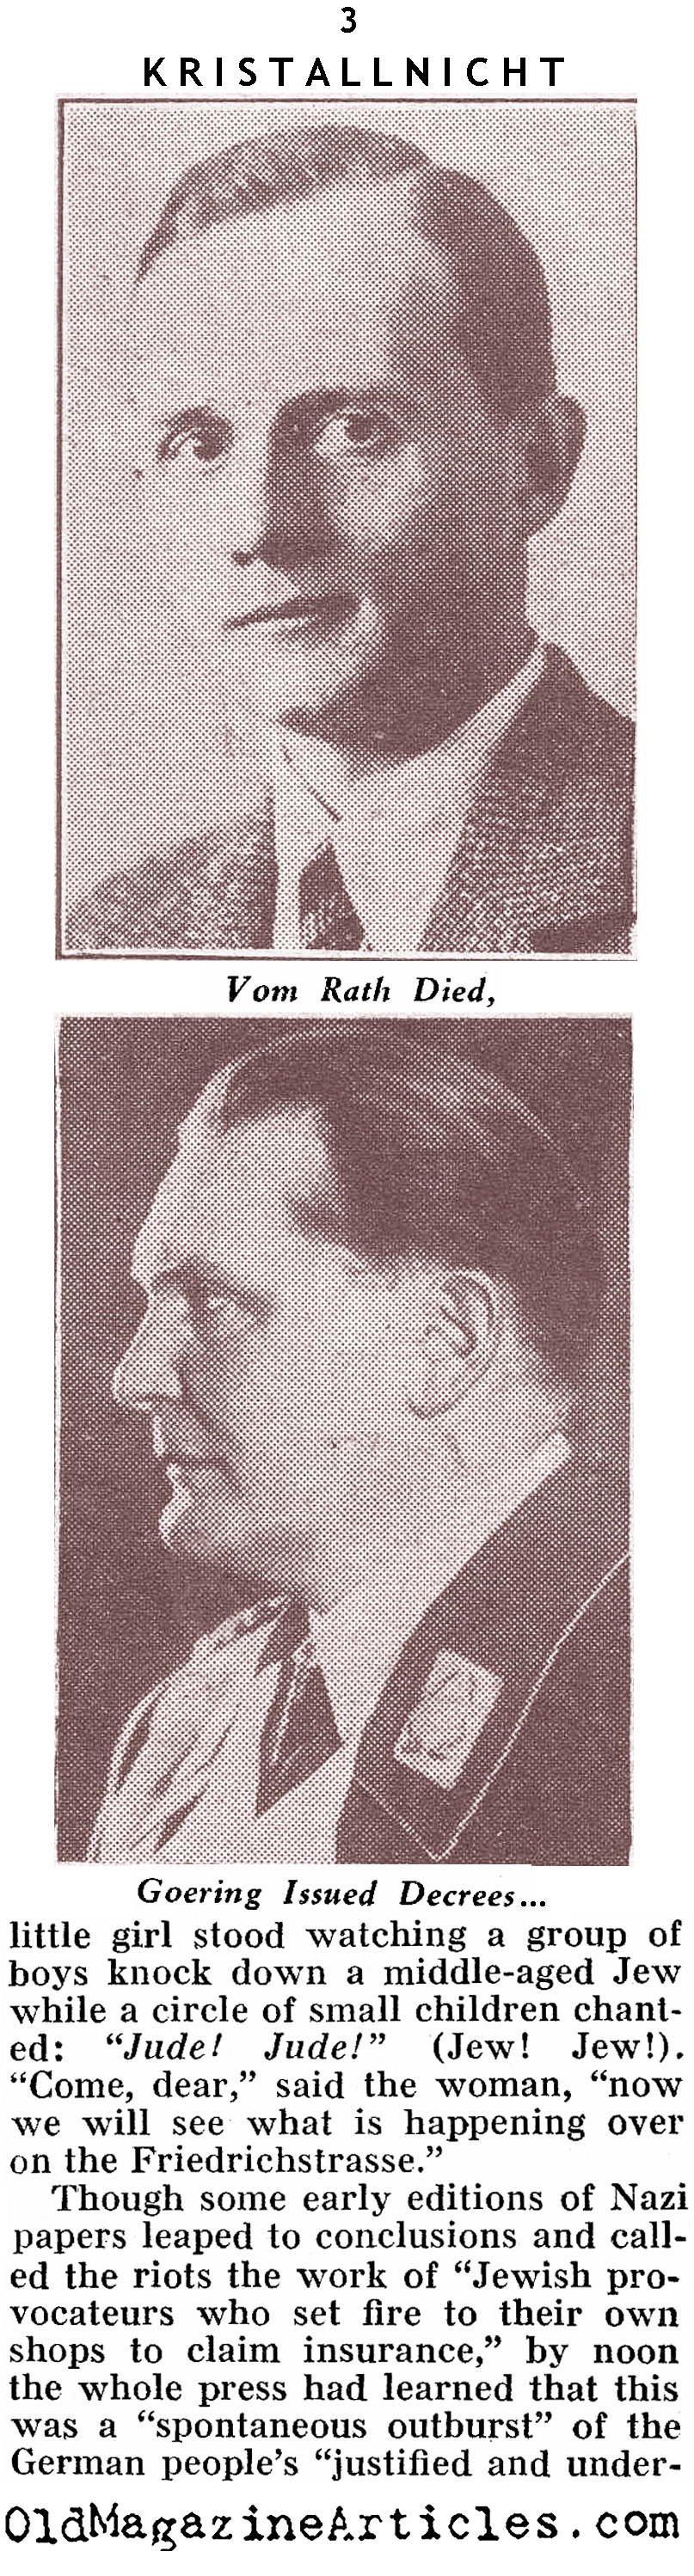 KRISTALLNACHT (Pathfinder Magazine, 1938)